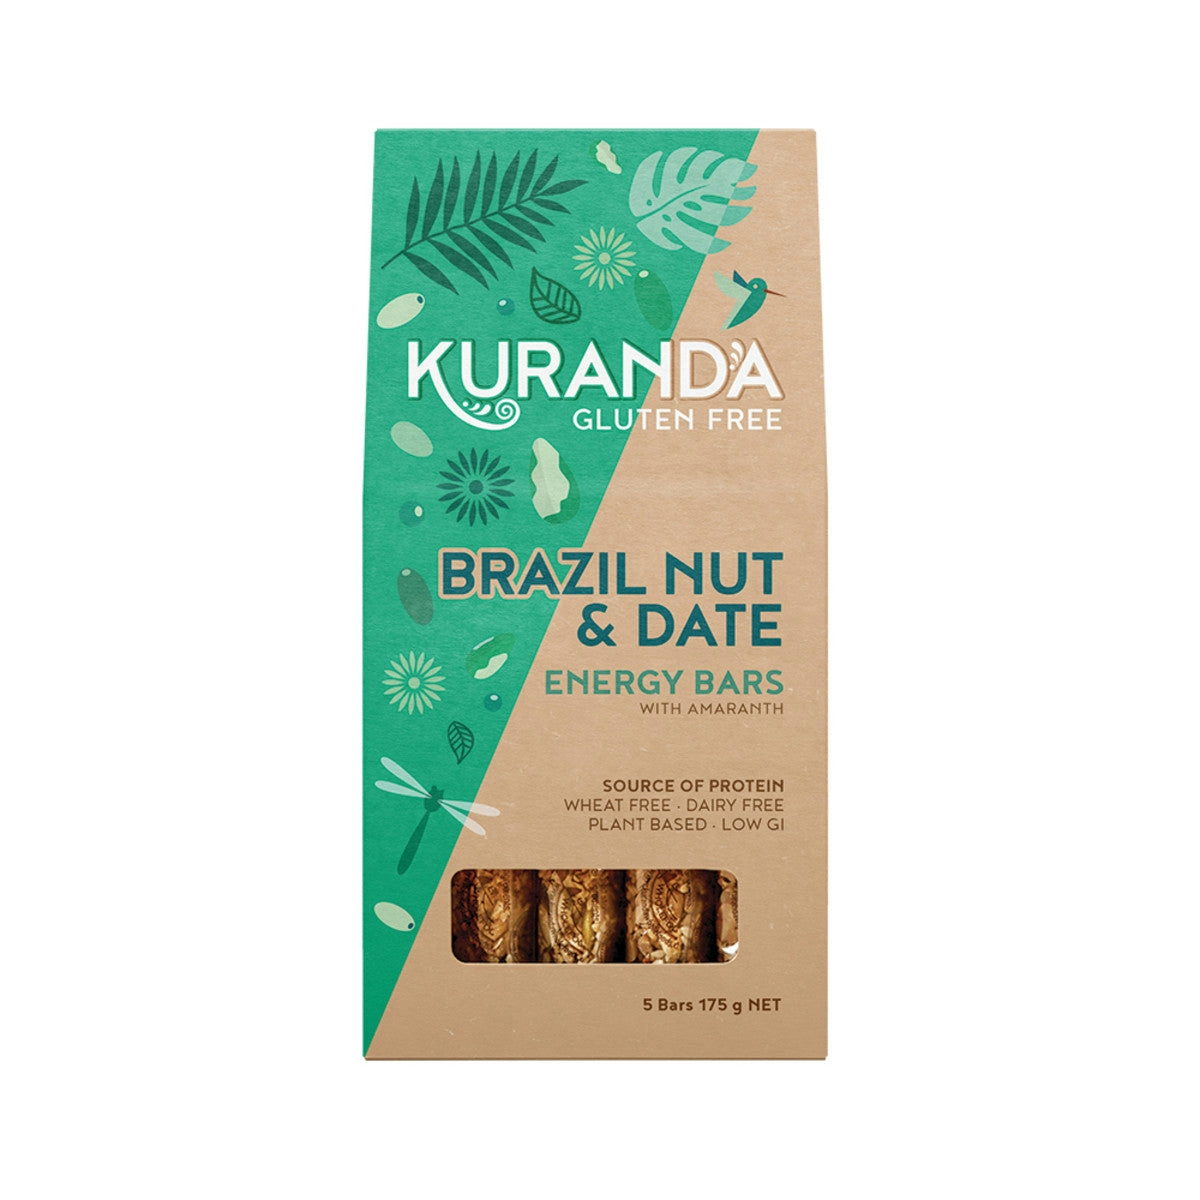 image of Kuranda Gluten Free Energy Bars Brazil Nut & Date 35g x 5 Pack on white background 